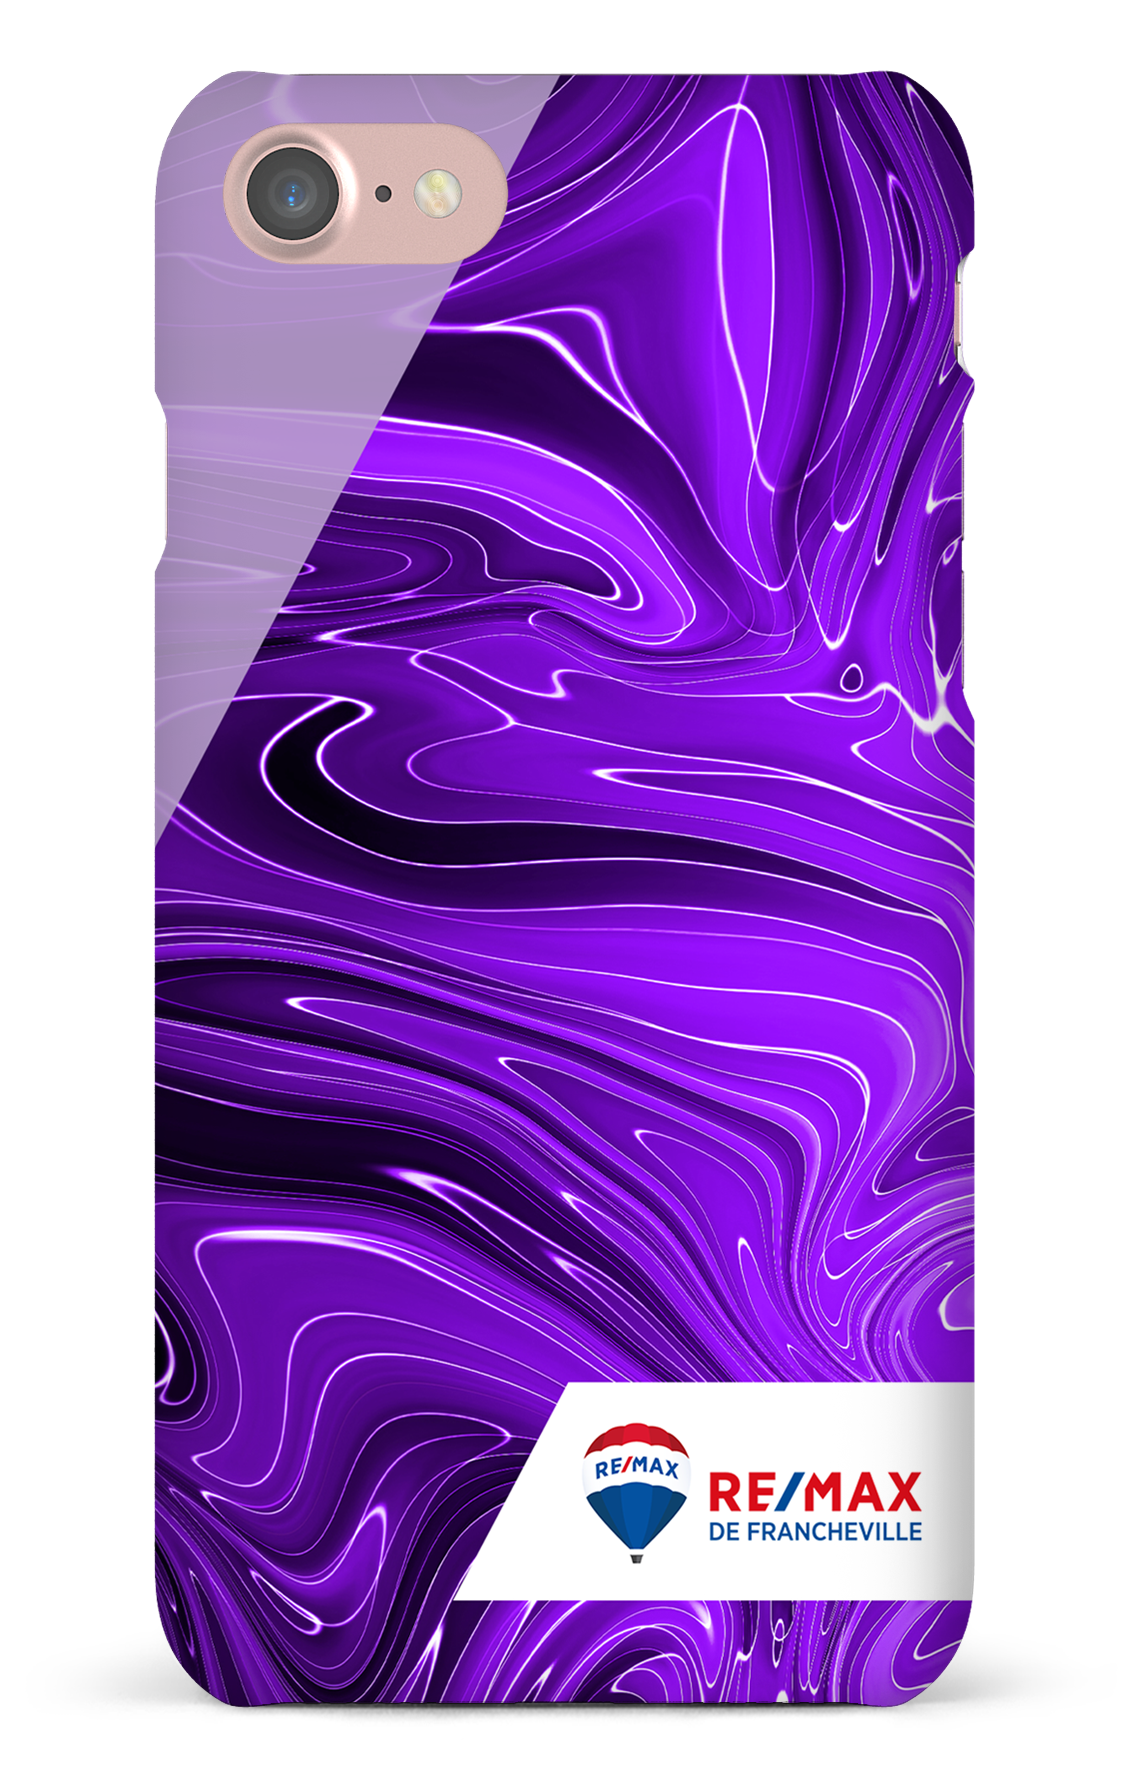 Peinture marbrée sombre violette de Francheville - iPhone 7